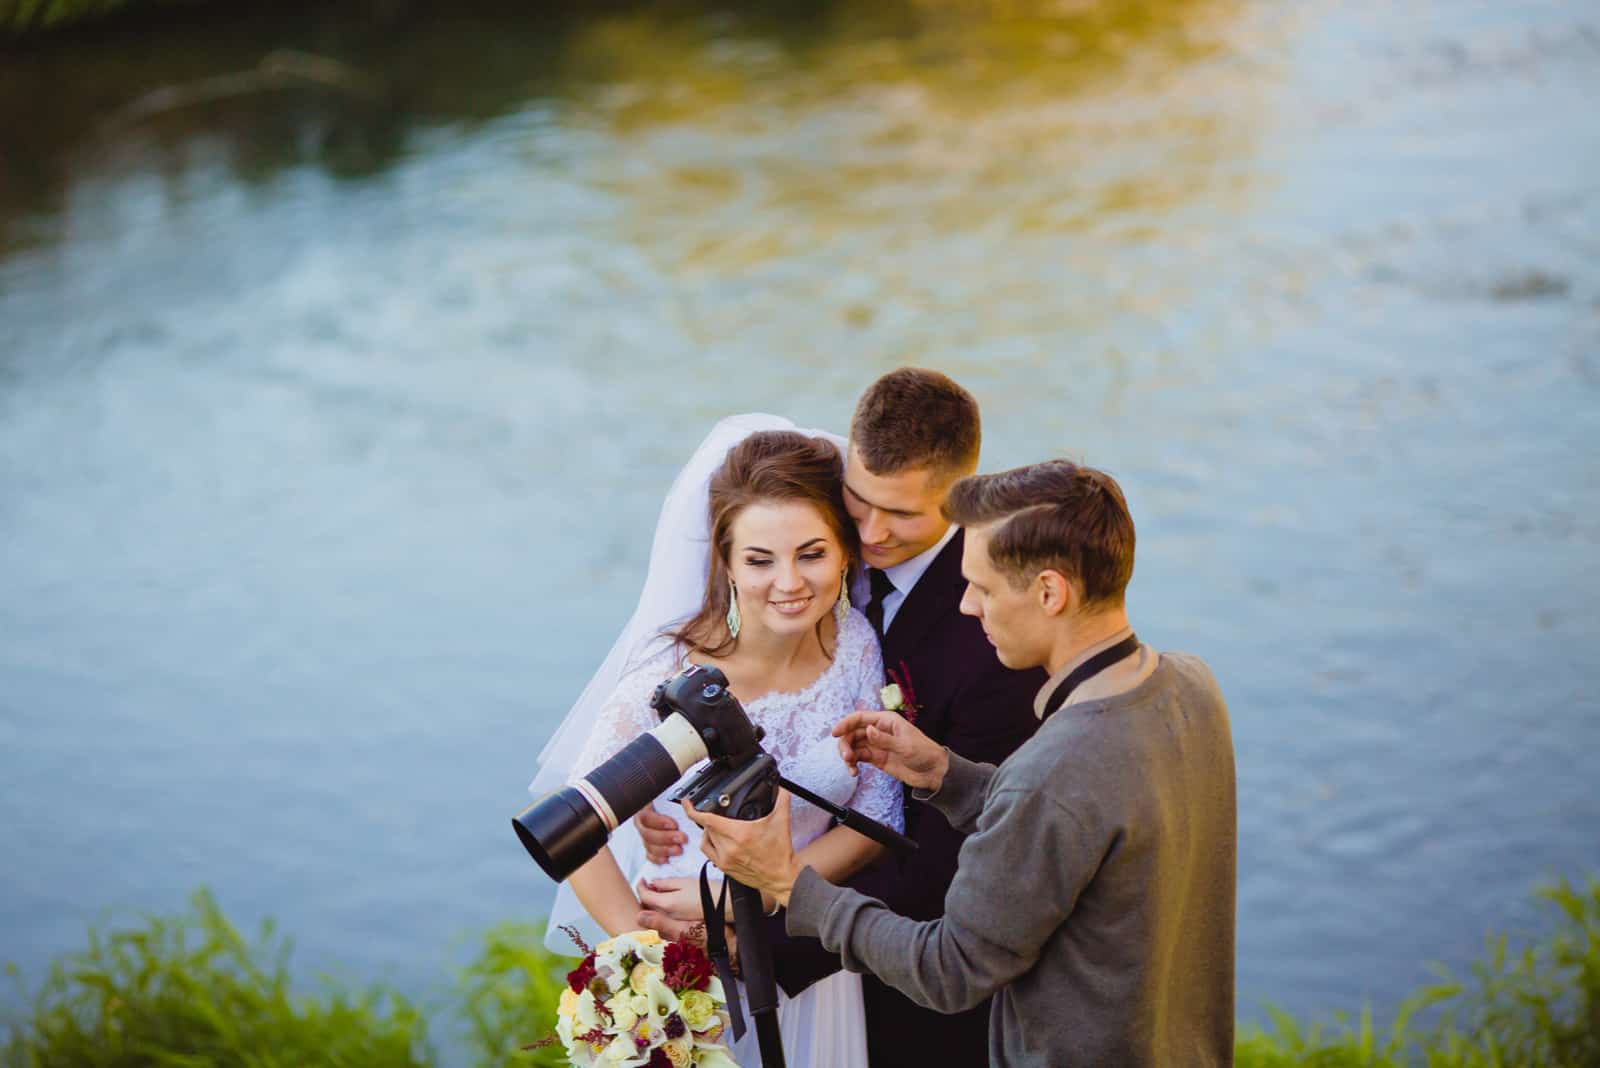 Der Fotograf, der Braut und Bräutigam zeigt, hatte gerade Fotos gemacht (1)